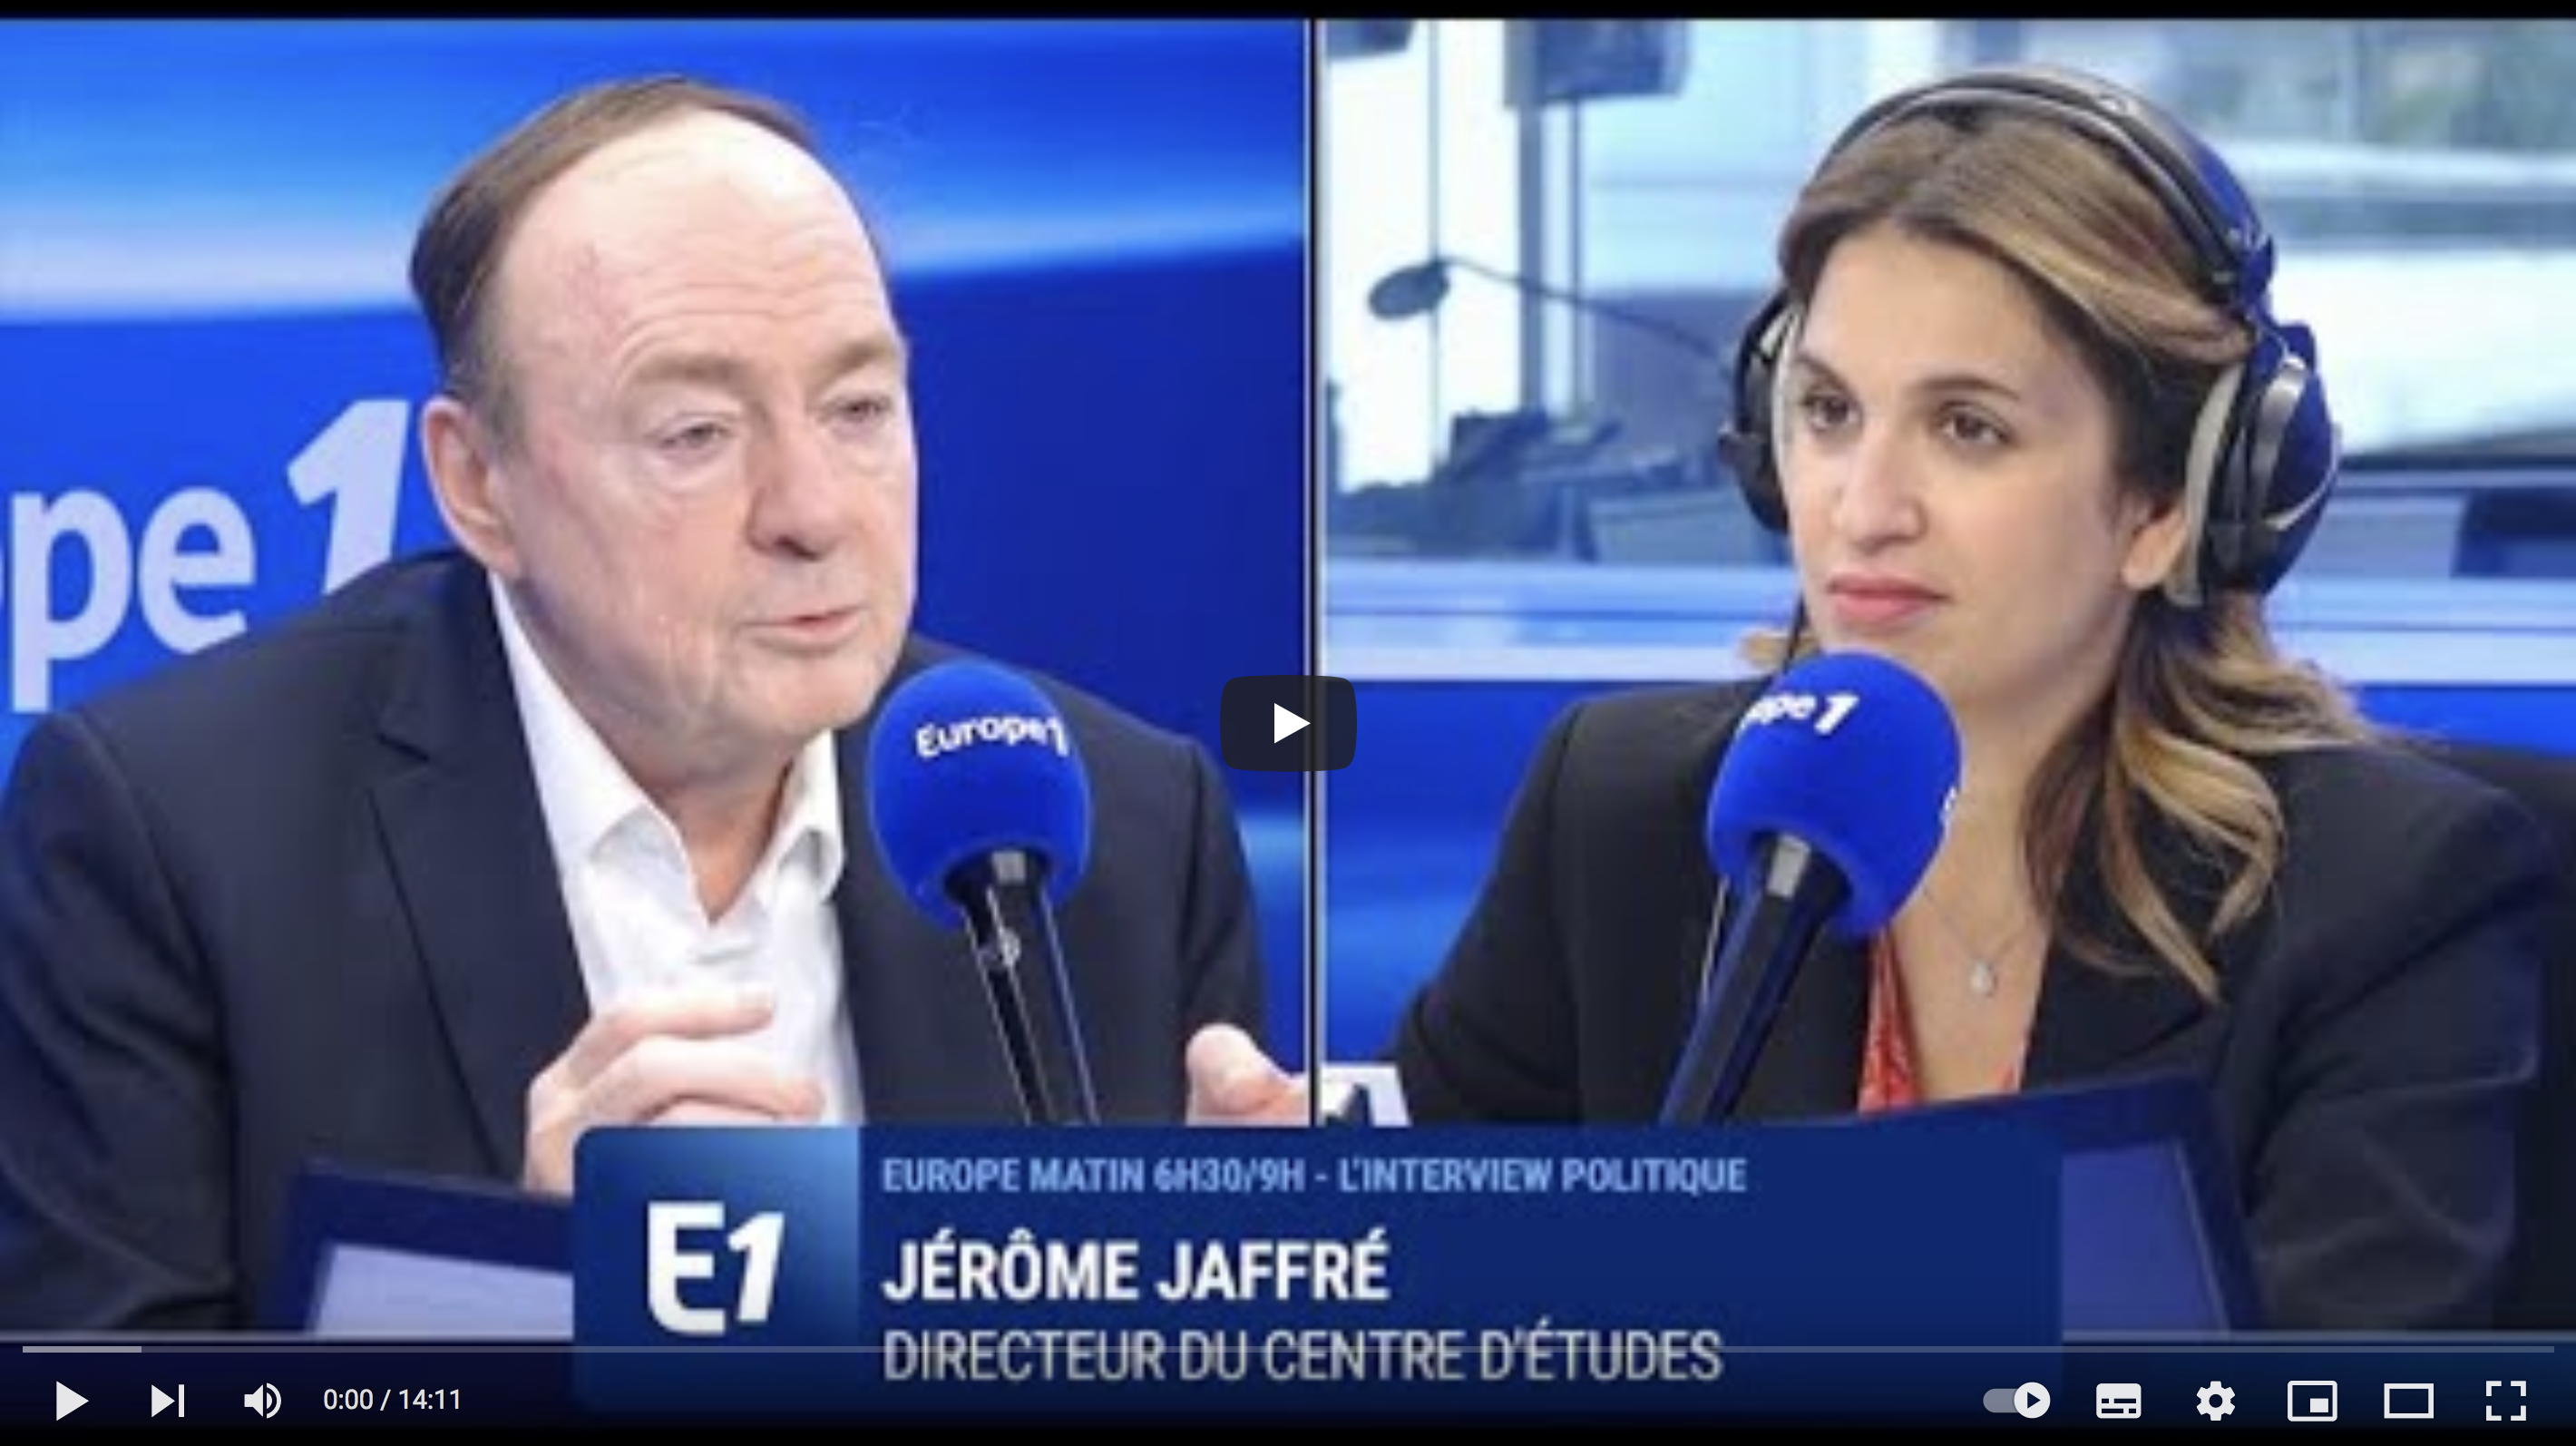 “Éric Zemmour place le débat là où les Français souhaiteraient qu’il soit” (Jérôme Jaffré)